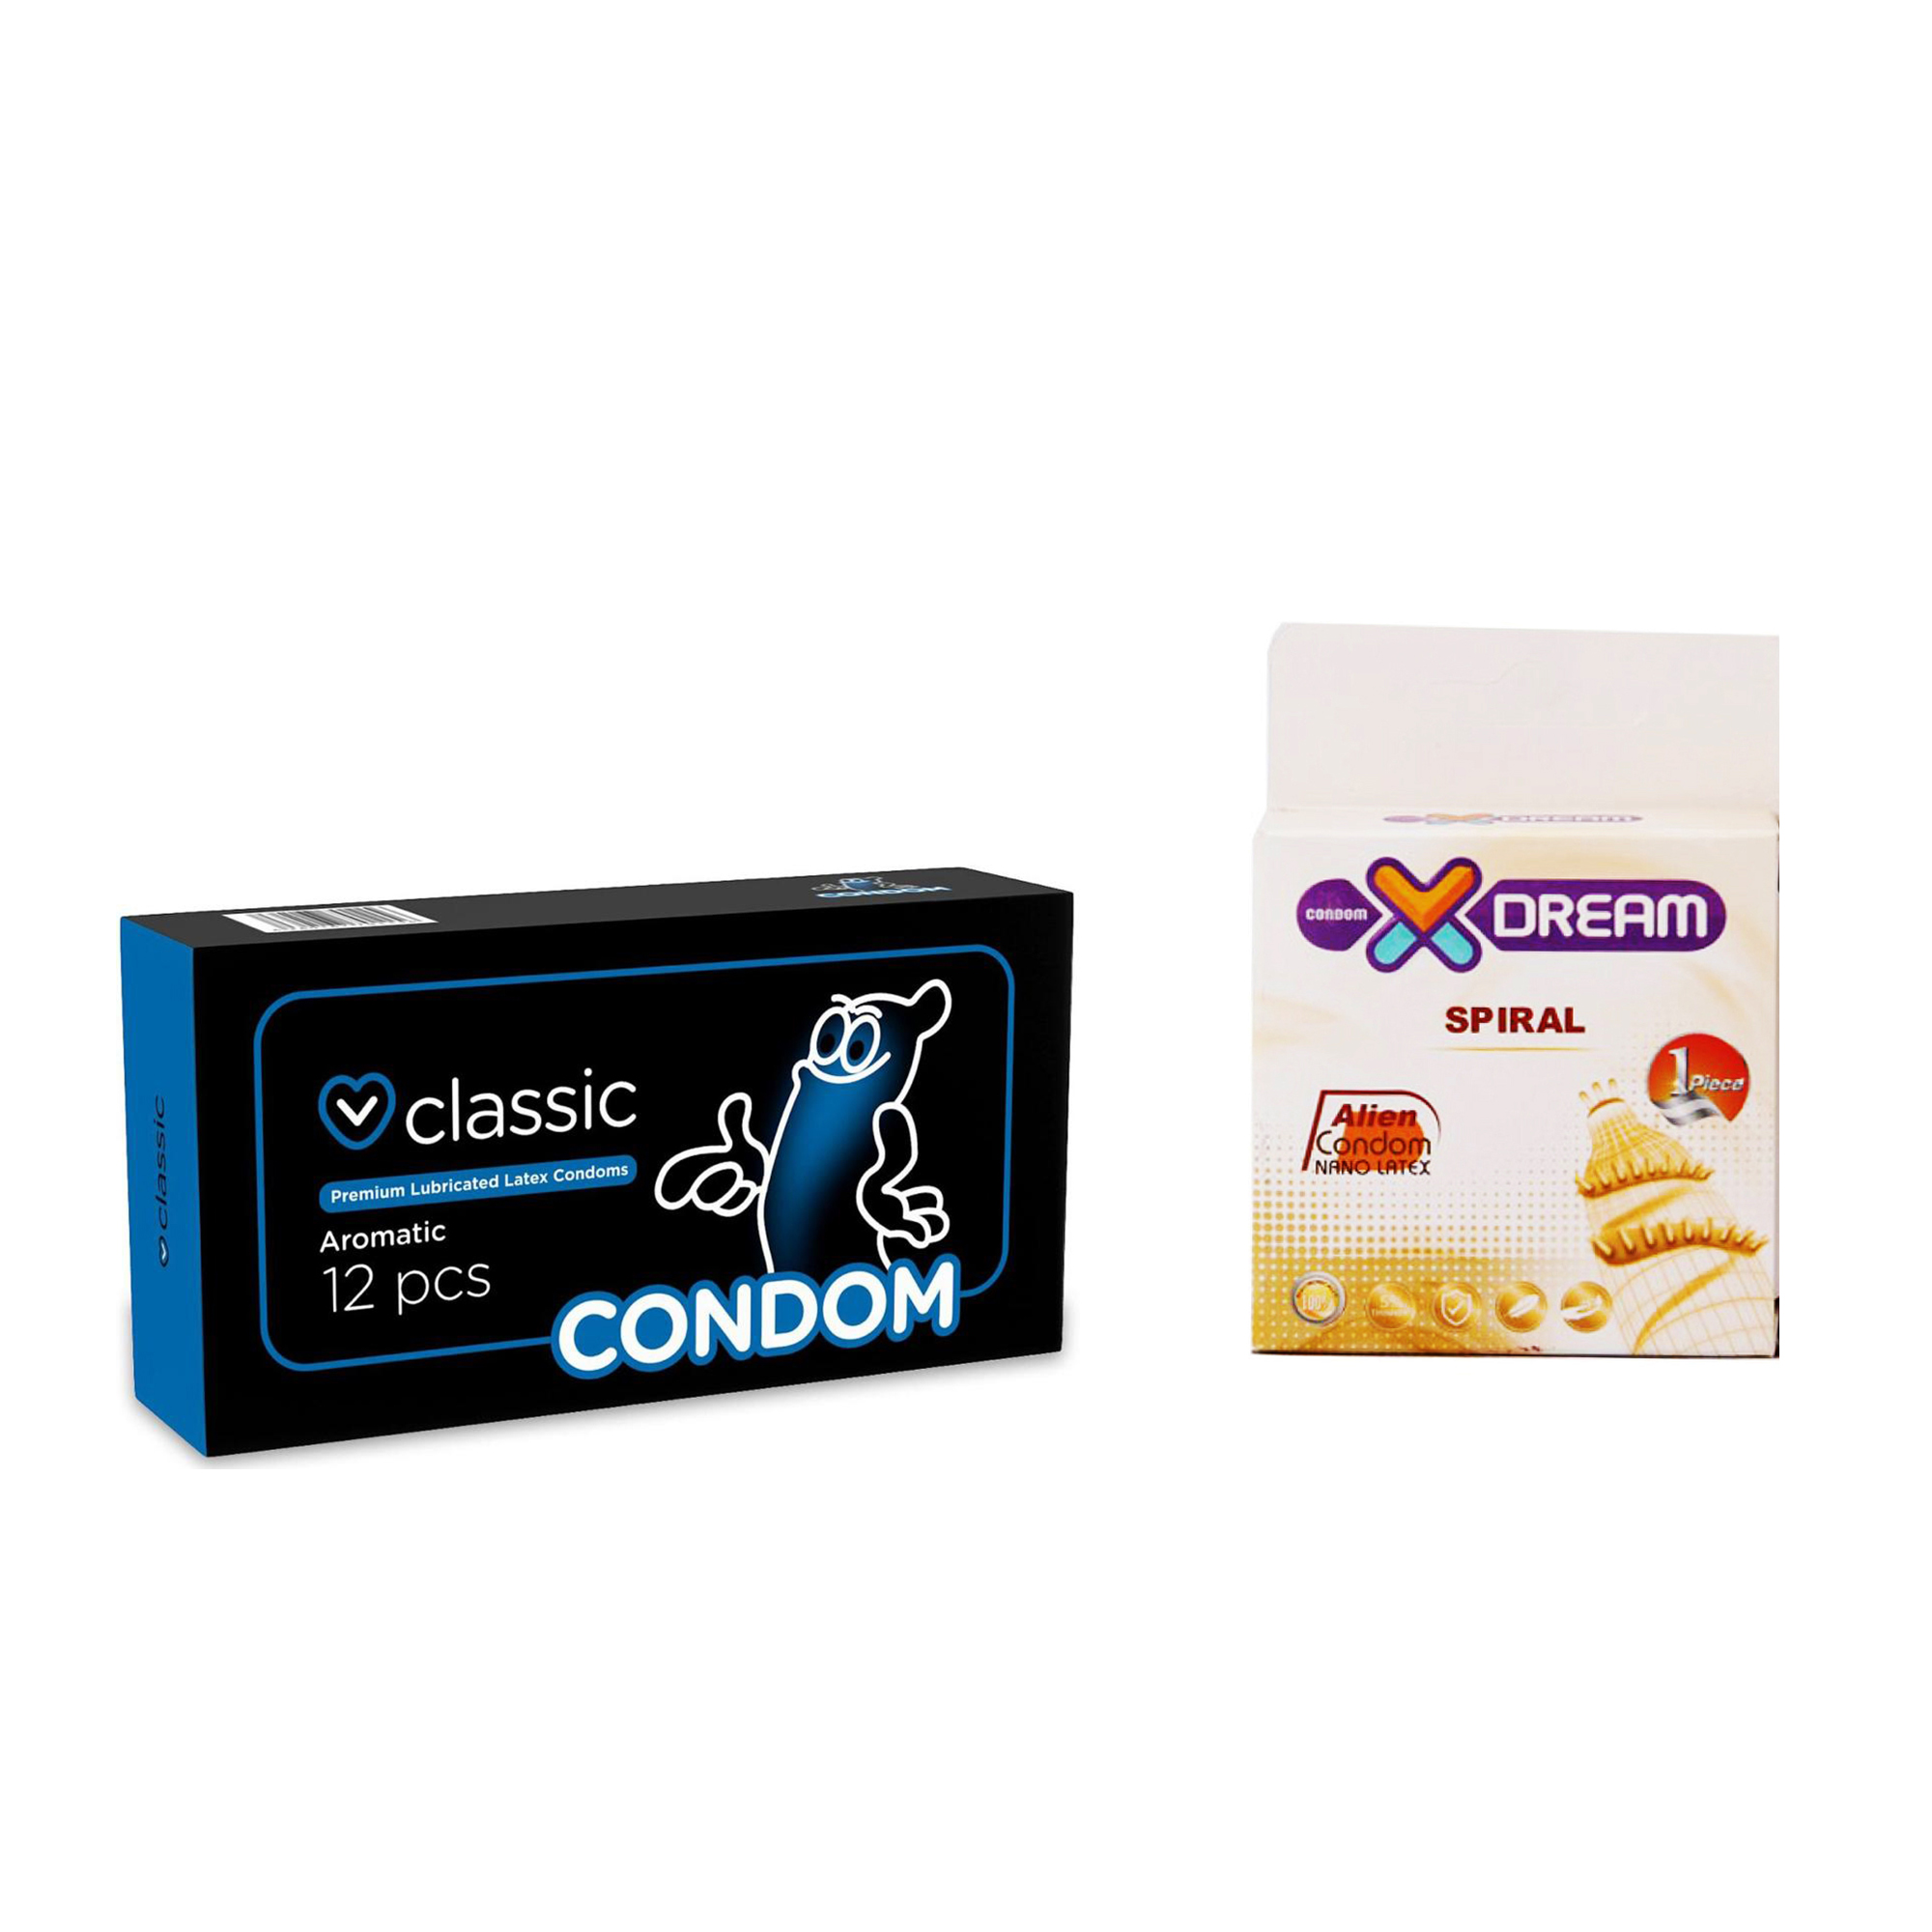 کاندوم ایکس دریم مدل Spiral به همراه کاندوم کاندوم مدل Classic بسته 12 عددی